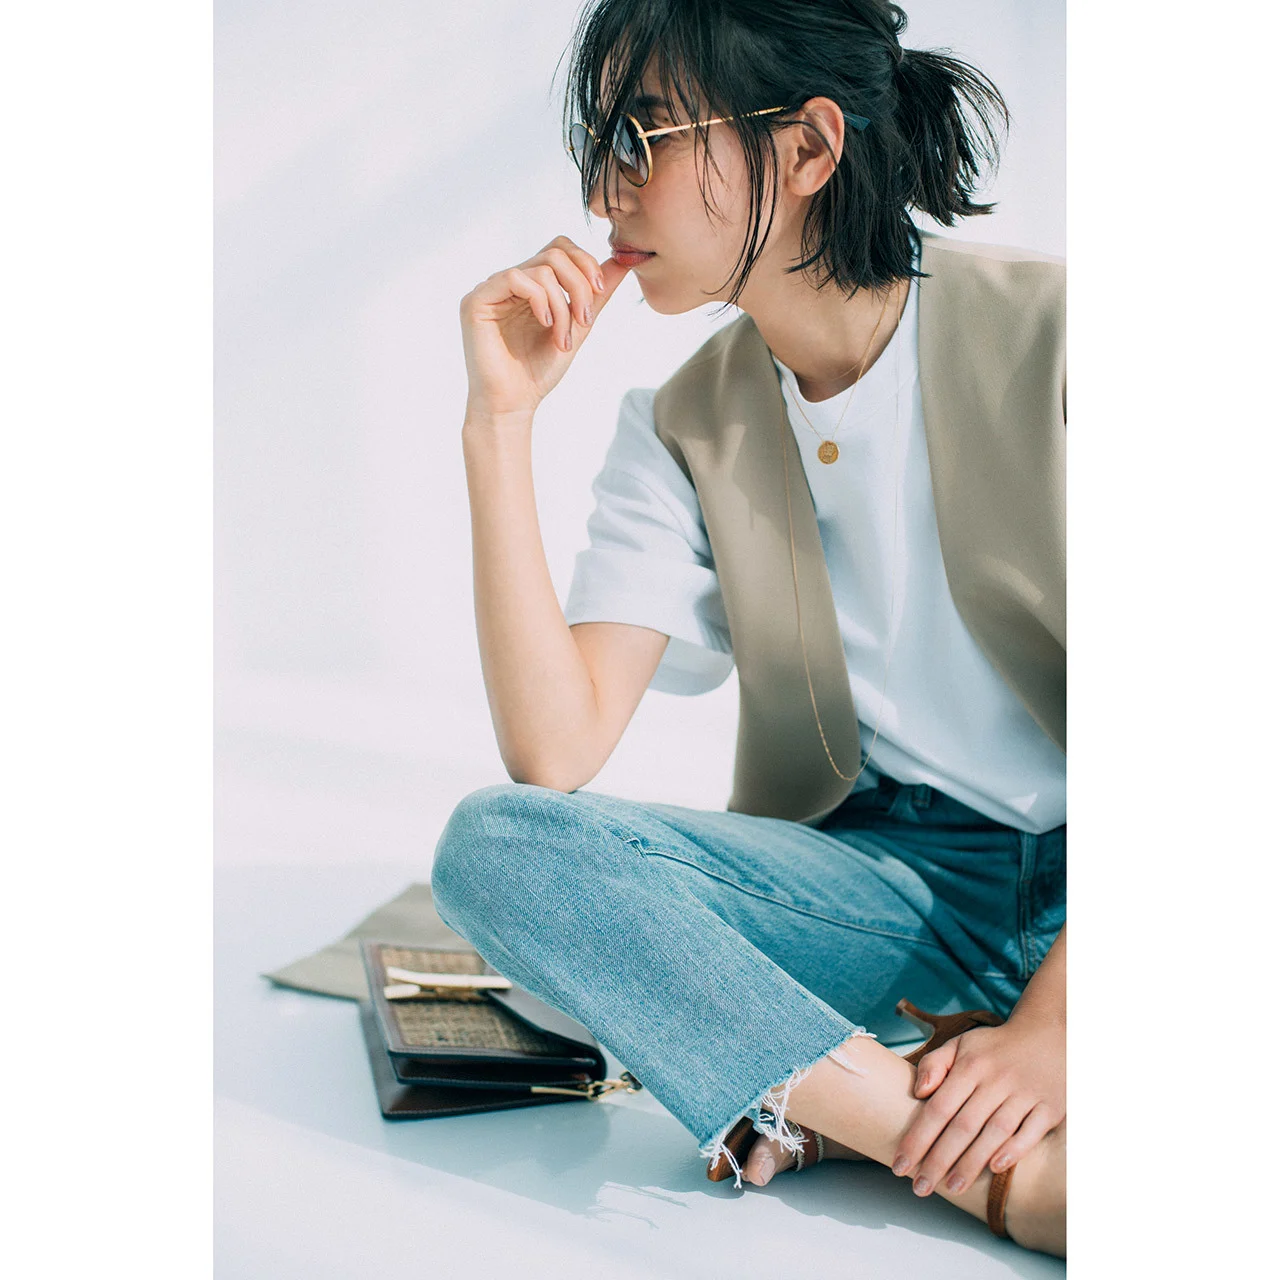 コインネックレス×白Tシャツ×ベスト×デニムパンツコーデを着たモデルの小泉里子さん